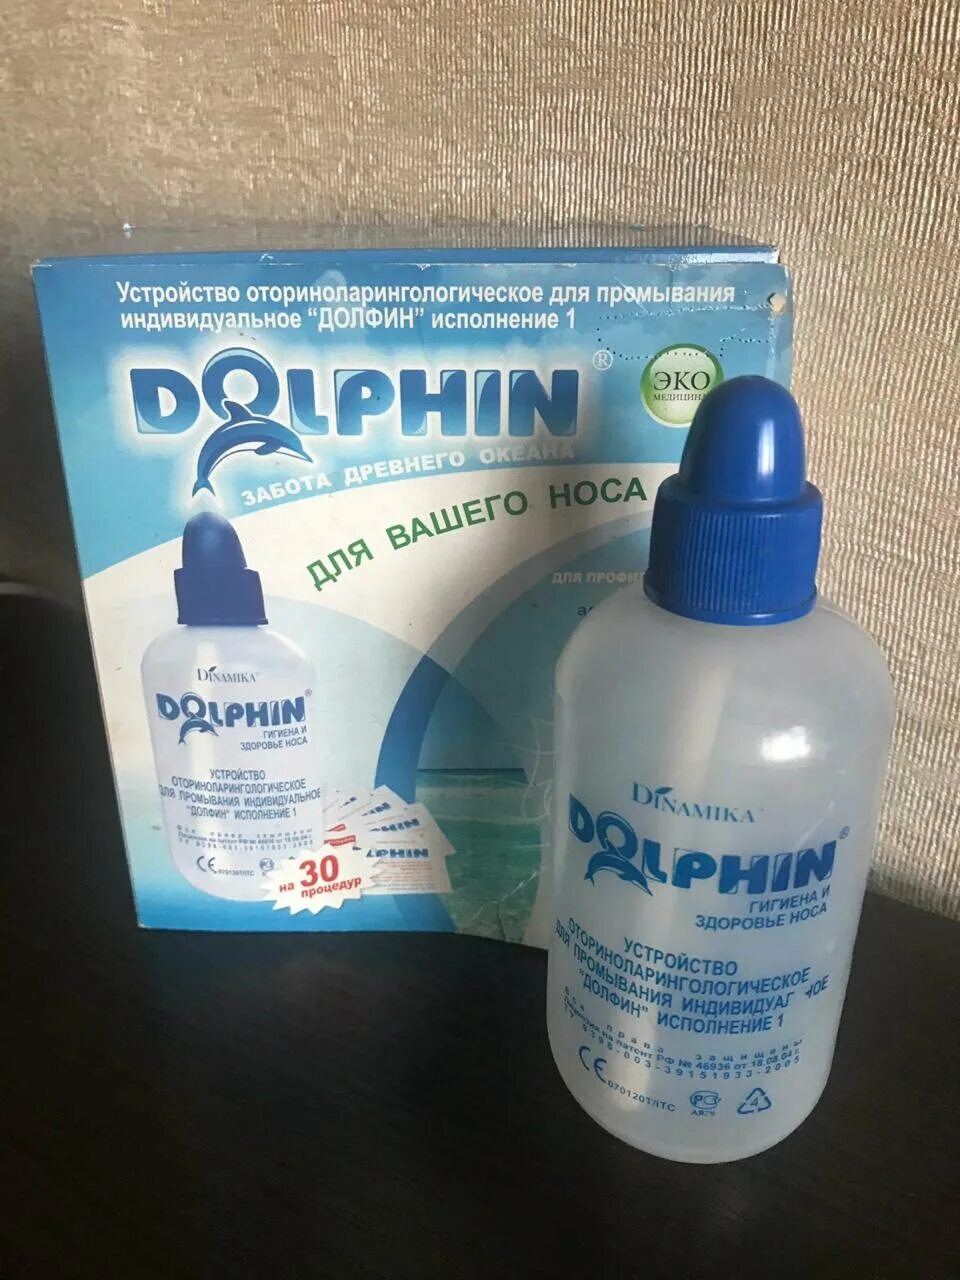 Порошки для промывания носа взрослым. Средство для промывания носа Долфин. Комплекс Долфин для промывания носа. Прибор для промывания носа Долфин. Долфин средство для промывания носа 2г 30.